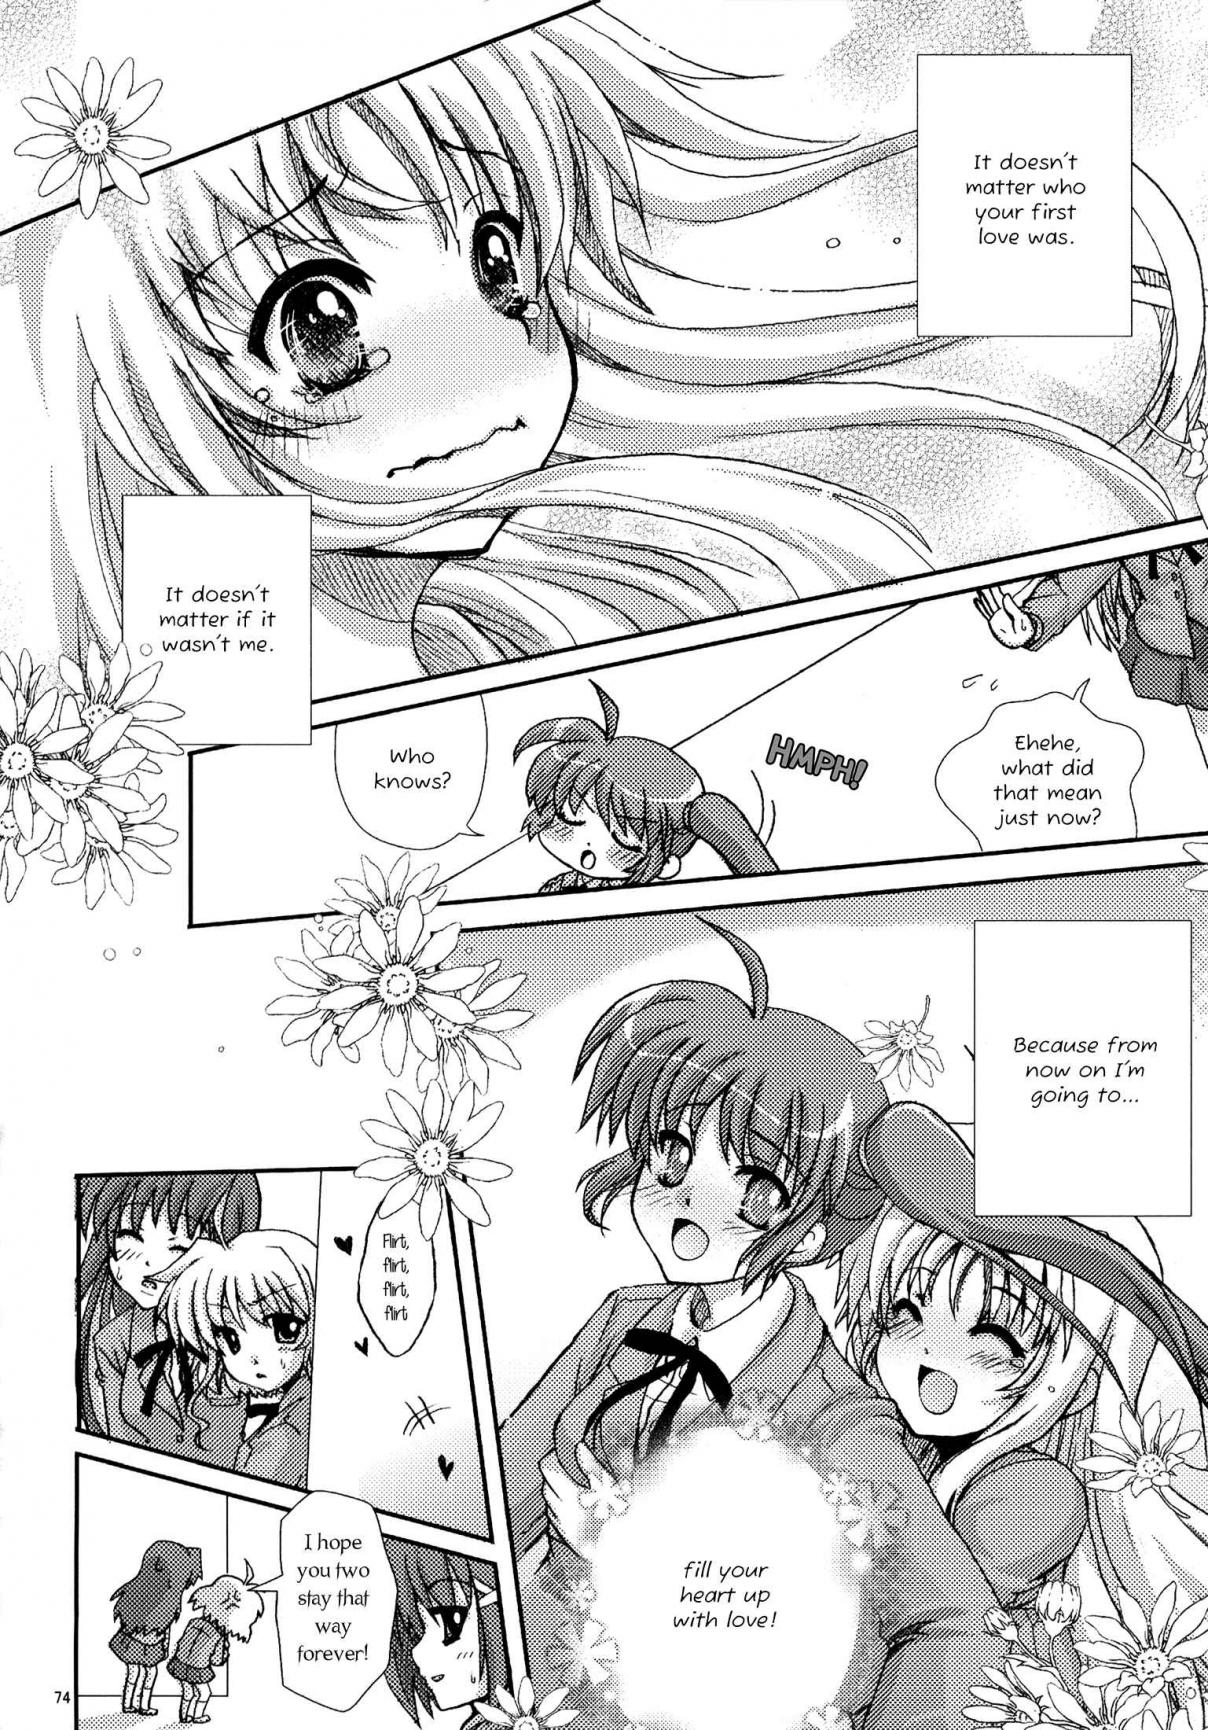 Mahou Shoujo Lyrical Nanoha A Magical Girl’s First Love Story (Doujinshi) Oneshot